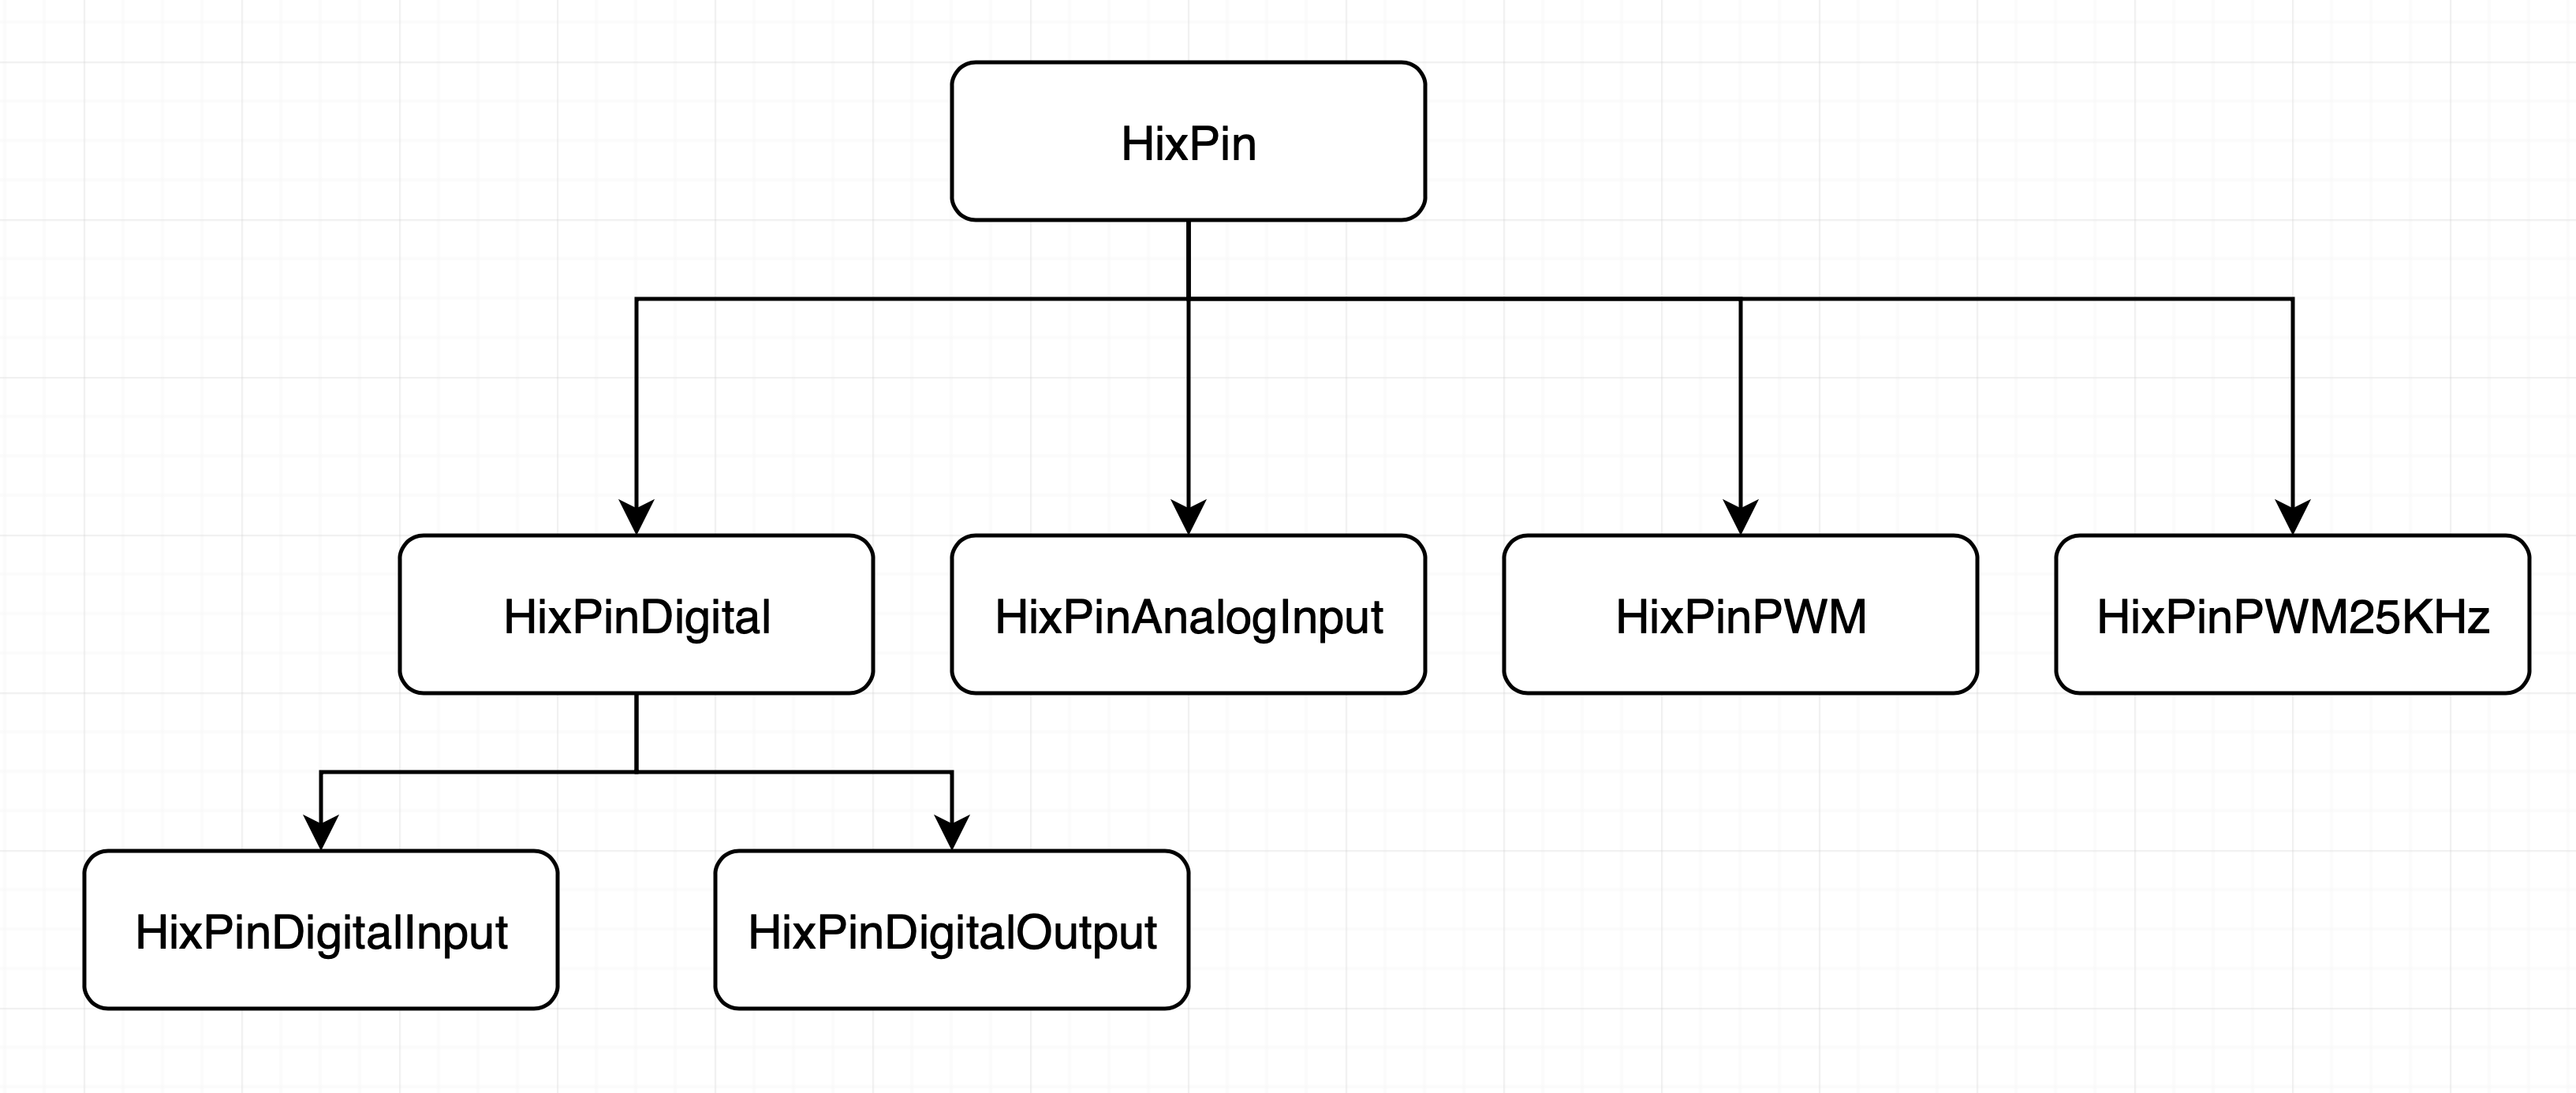 HixPin Class Diagram